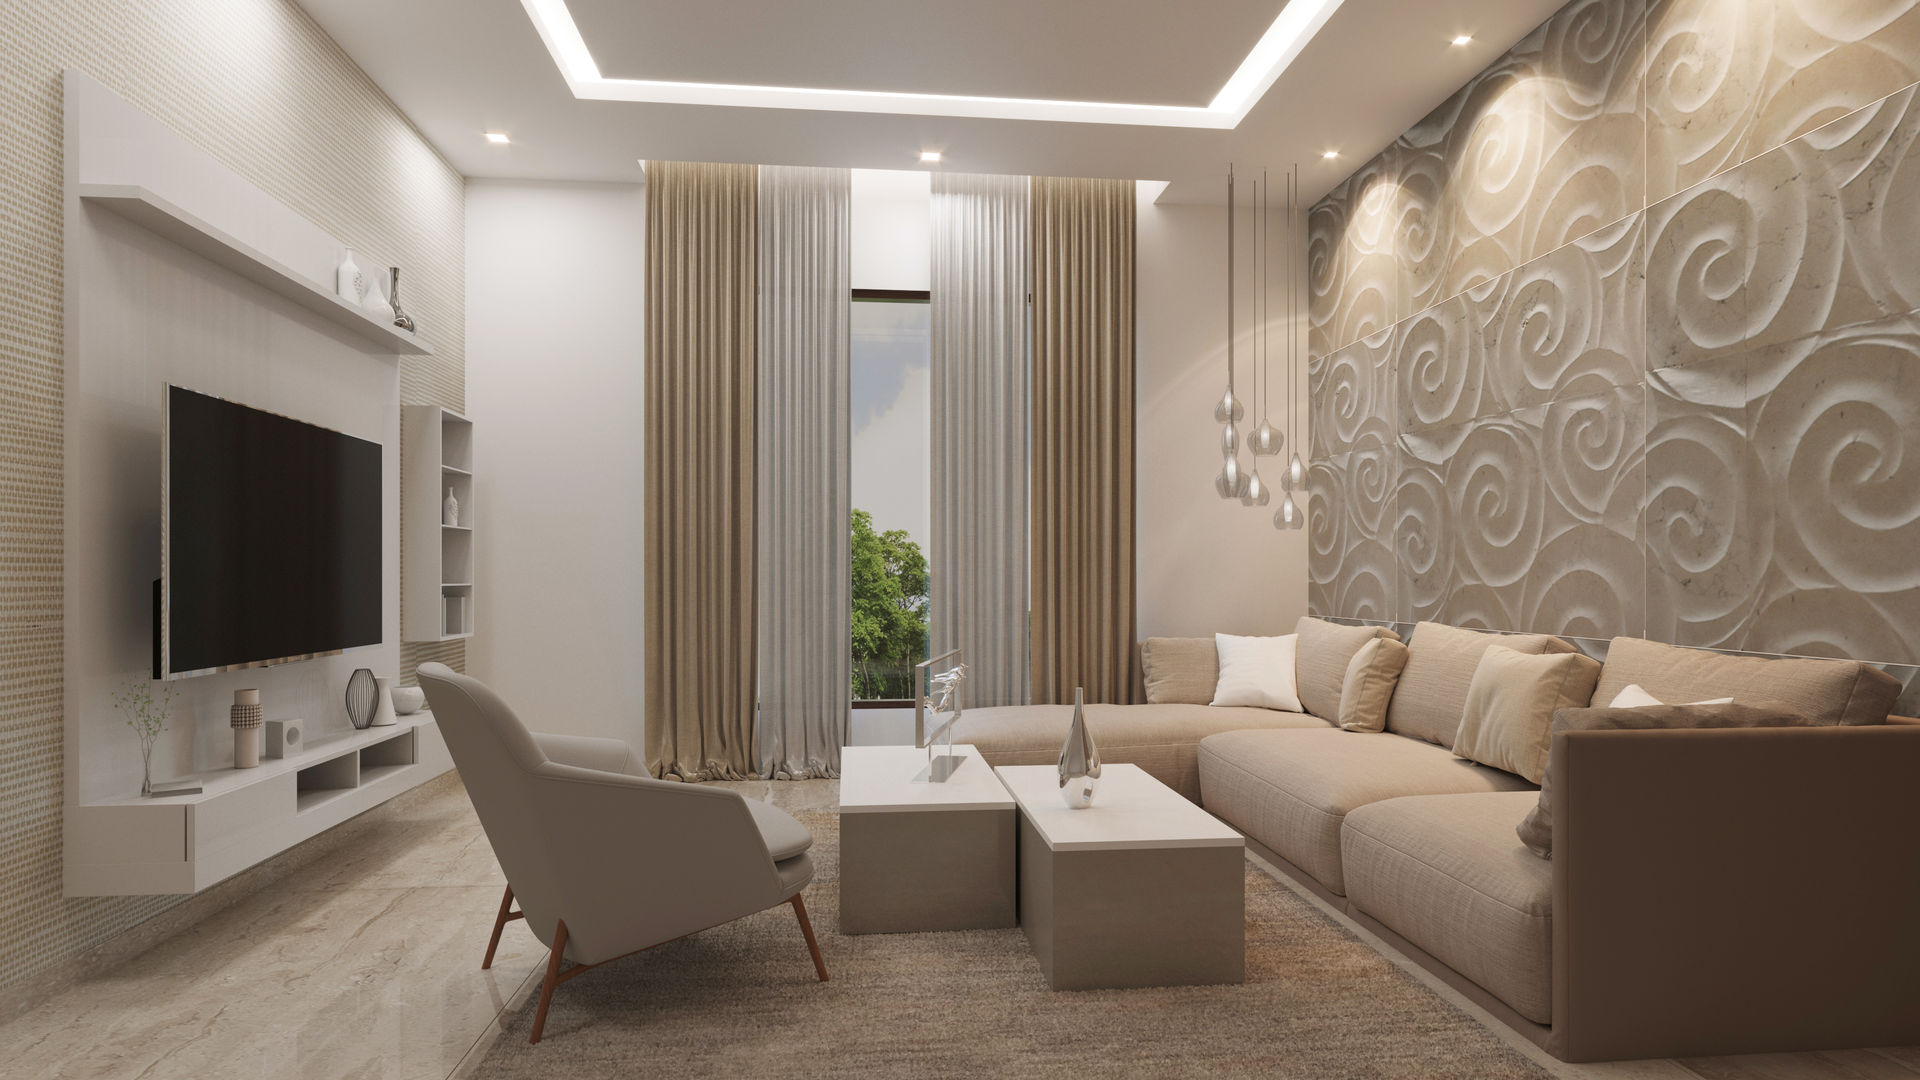 Plus Minus Pop Design Living Room | Pop ceiling design, Ceiling design  modern, Beautiful ceiling designs